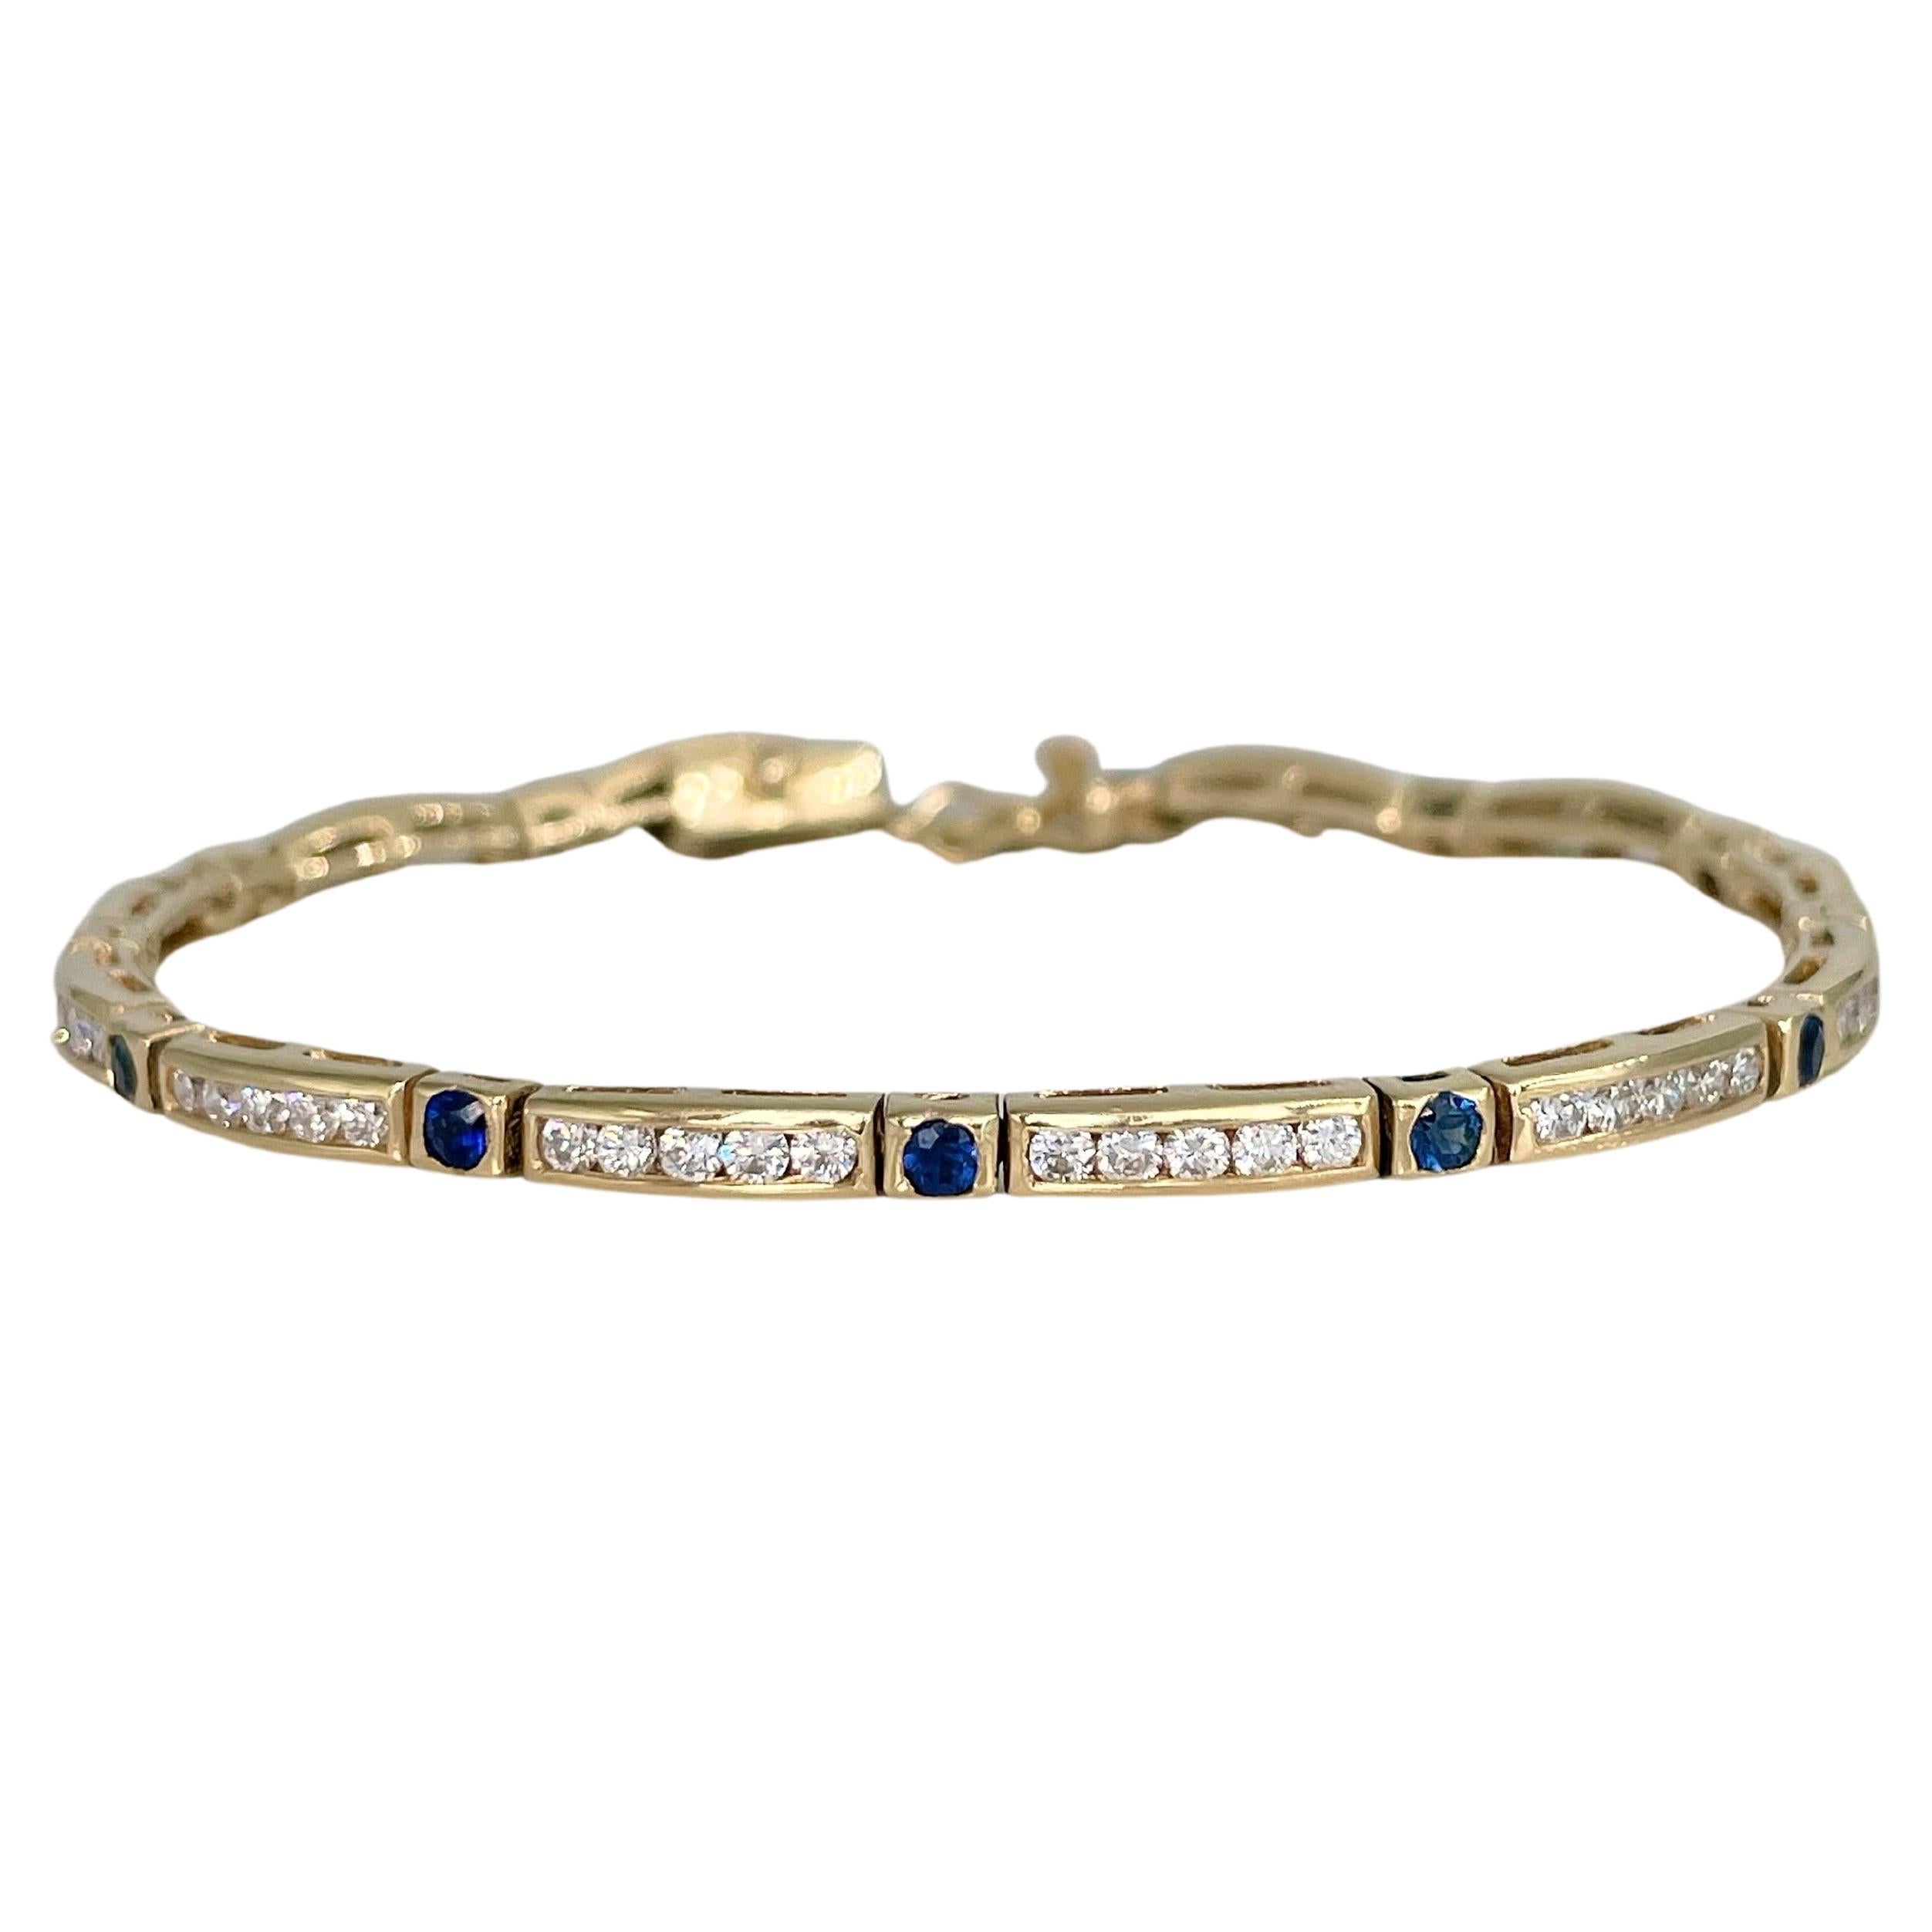 Bracelet tennis vintage en or 18 carats avec diamants 1,20 carat et saphirs 0,75 carat